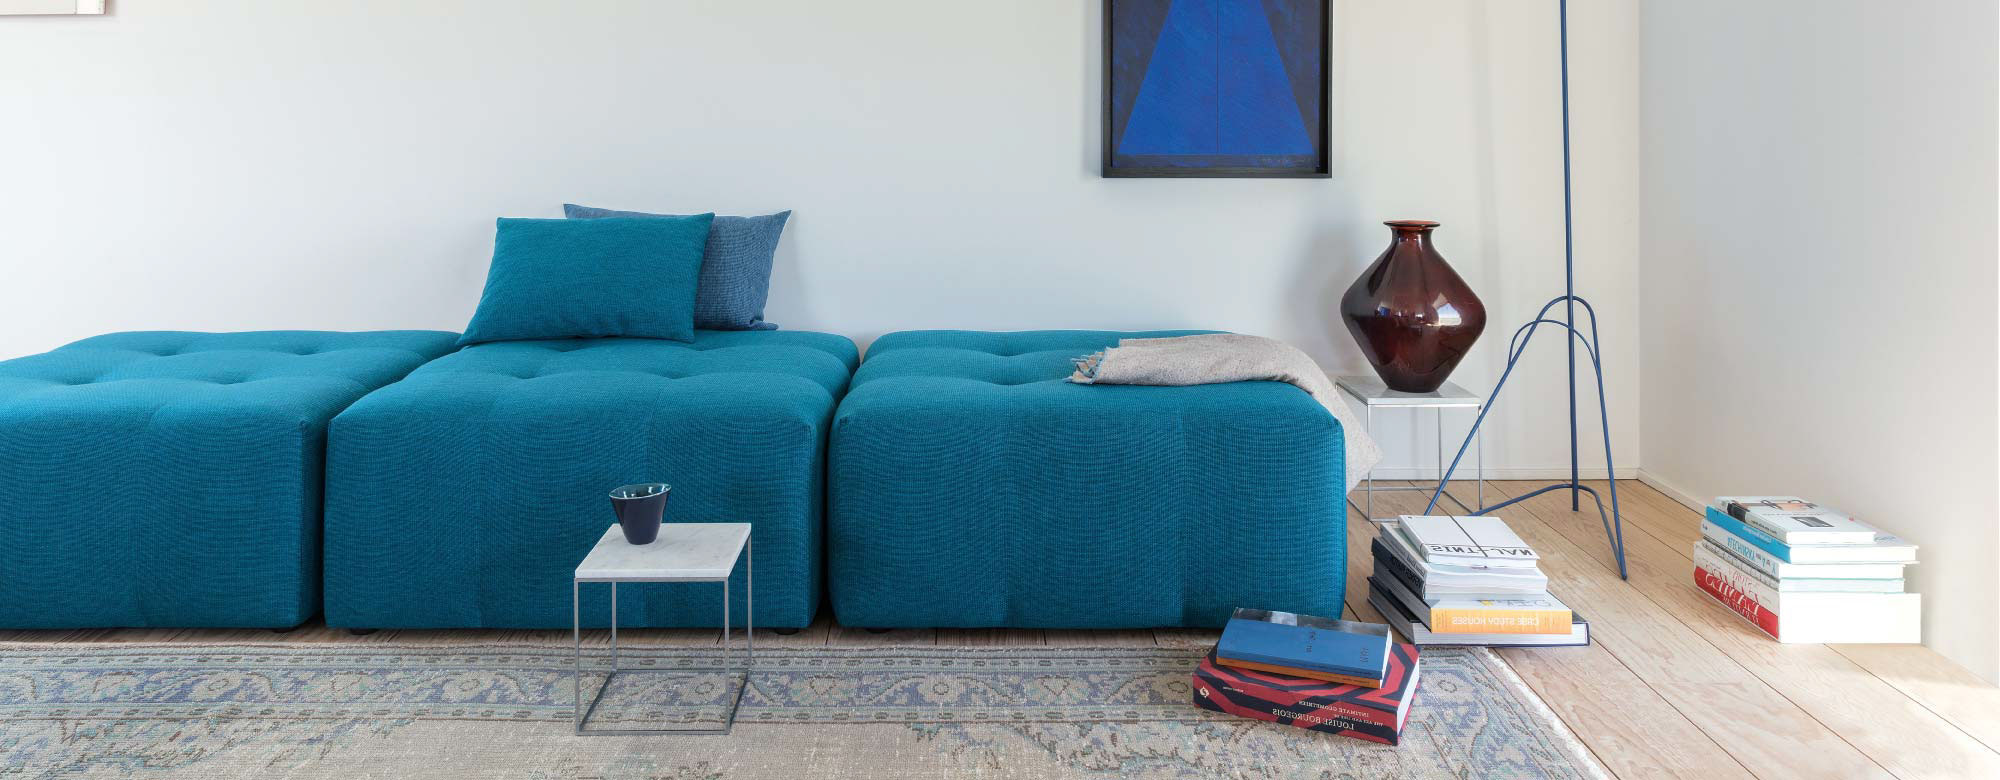 Legitimate Couch Cover Affair 2000x780 Centurion